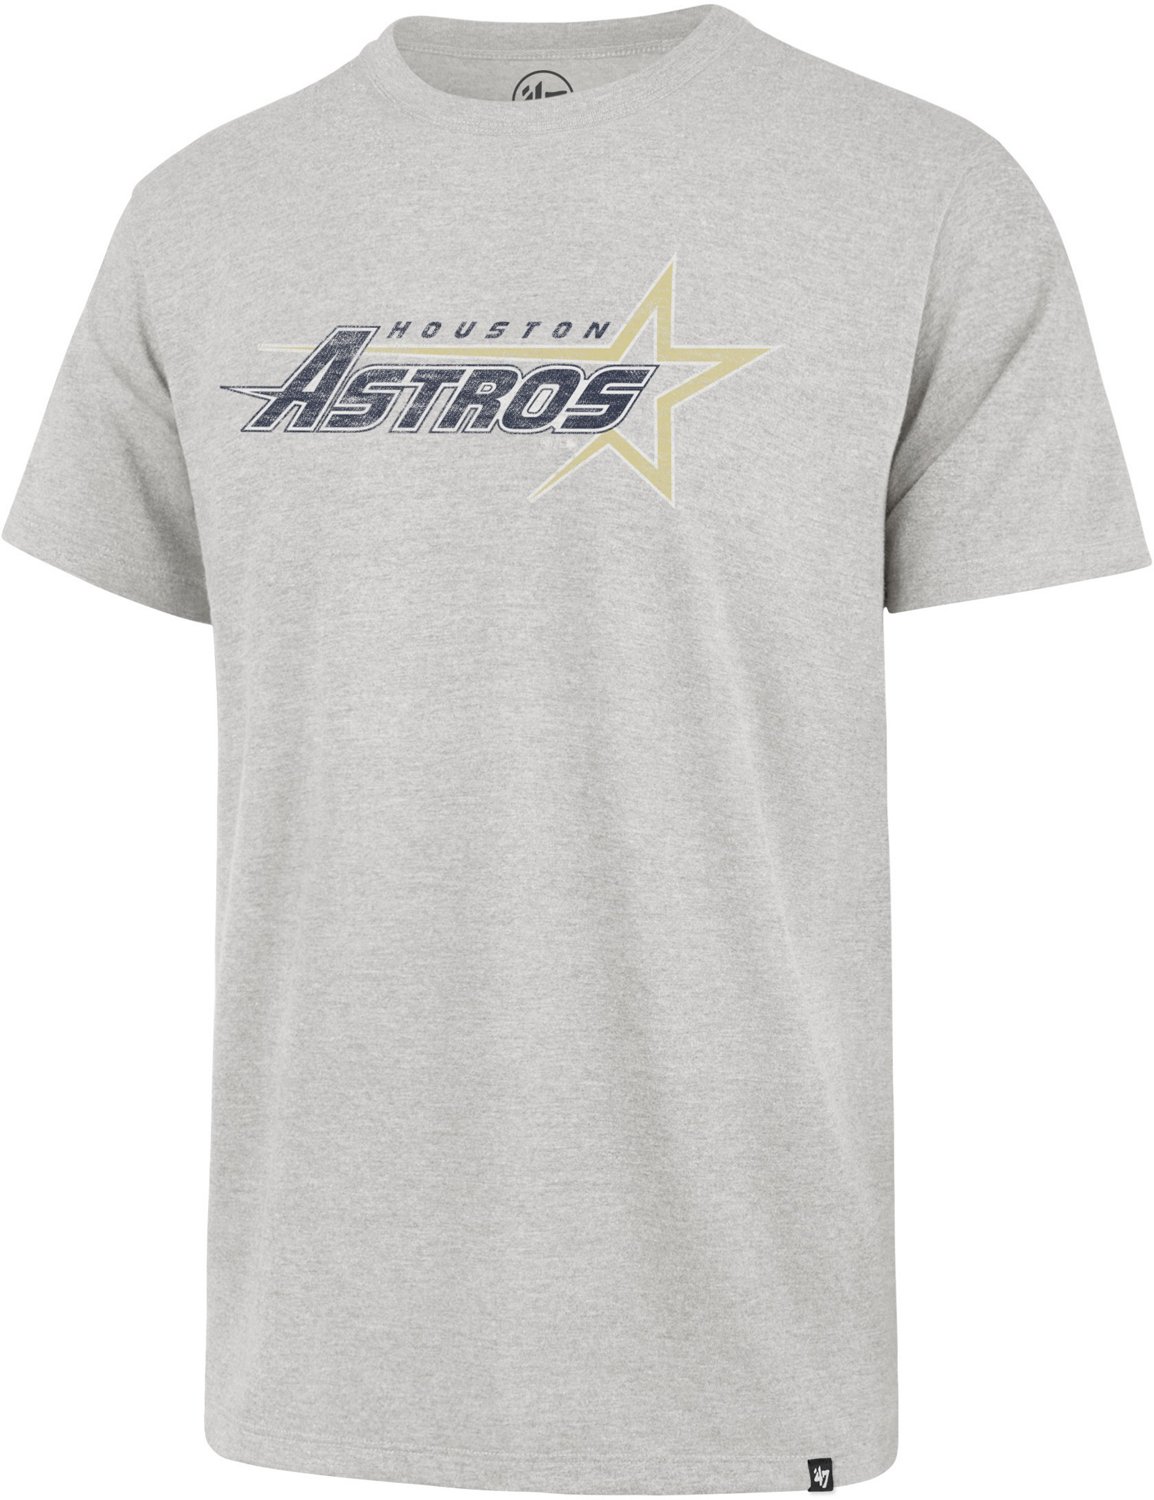 astros 47 shirt